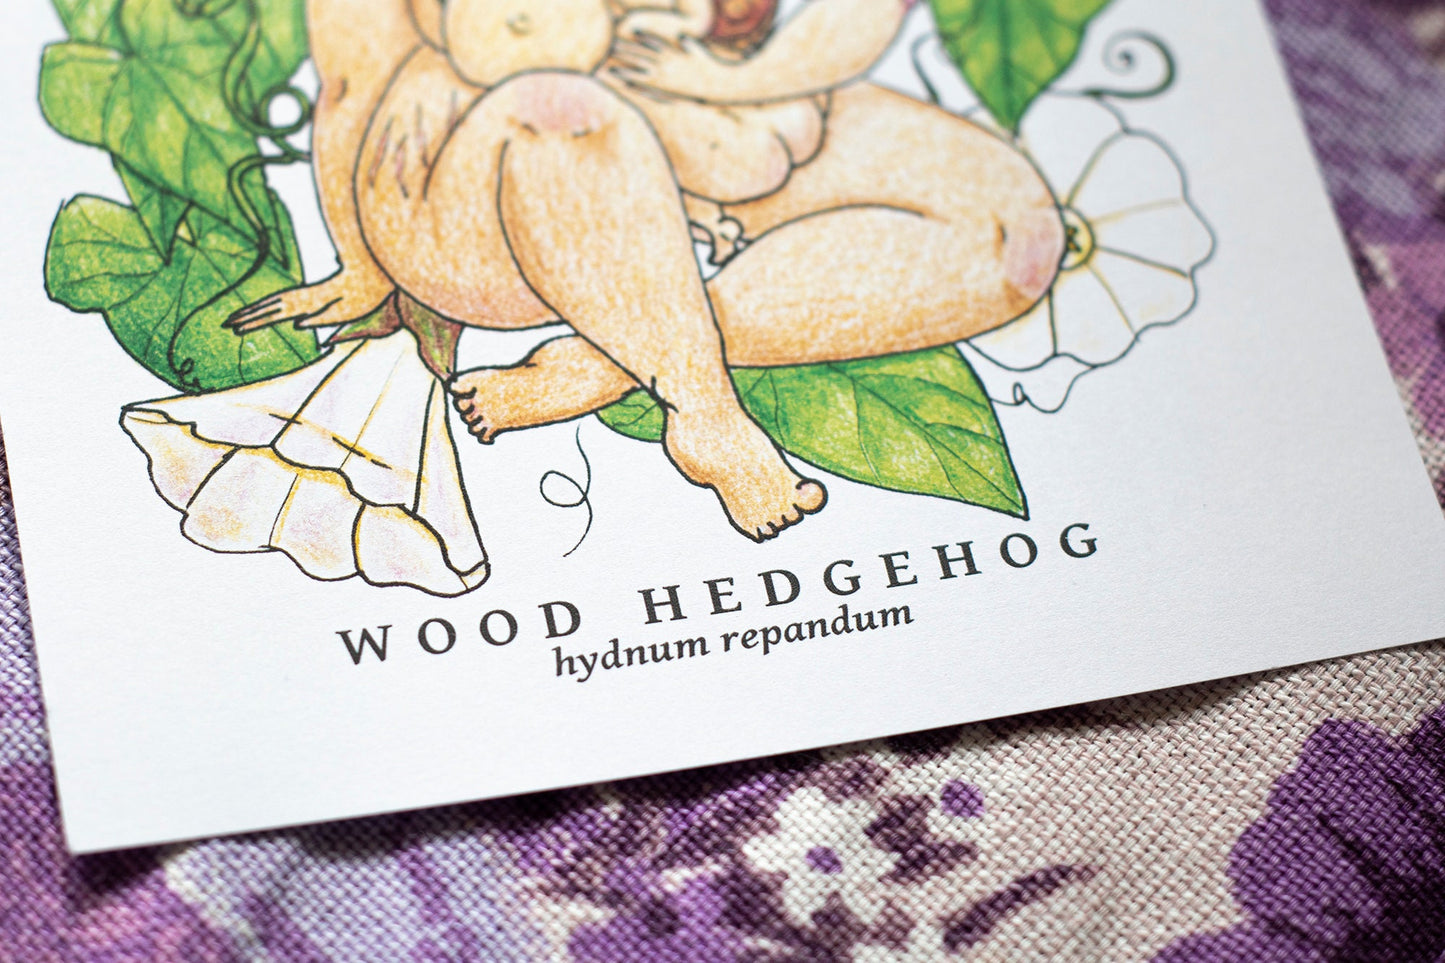 Wood Hedgehog